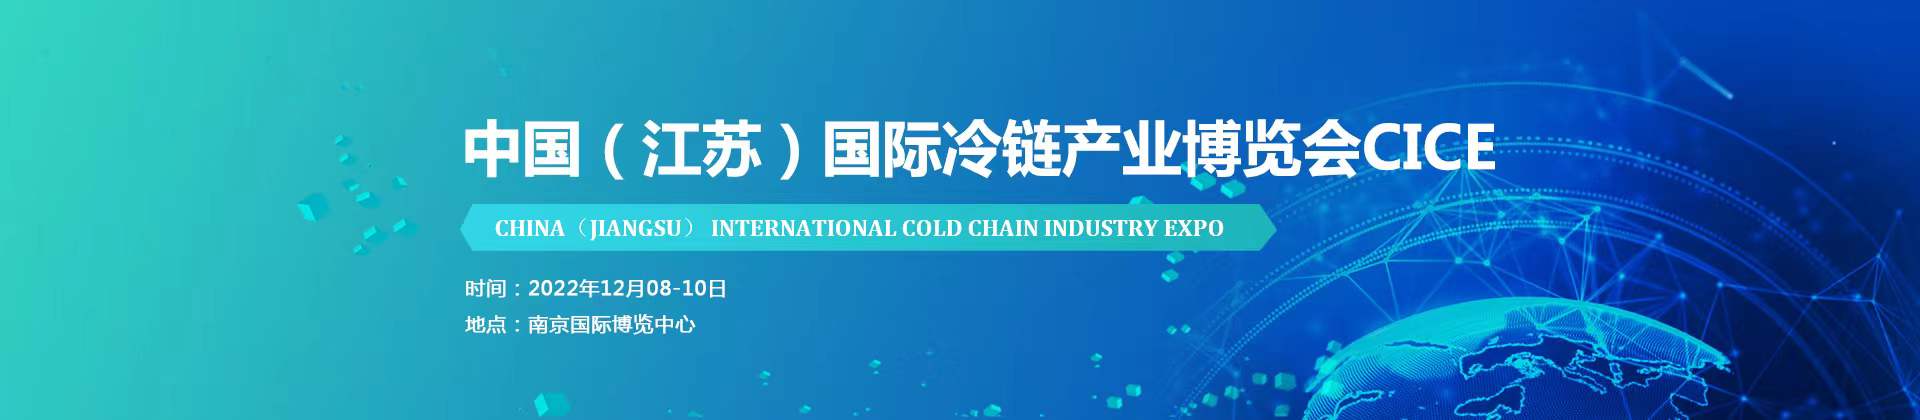 2022江蘇國際冷鏈產業博覽會